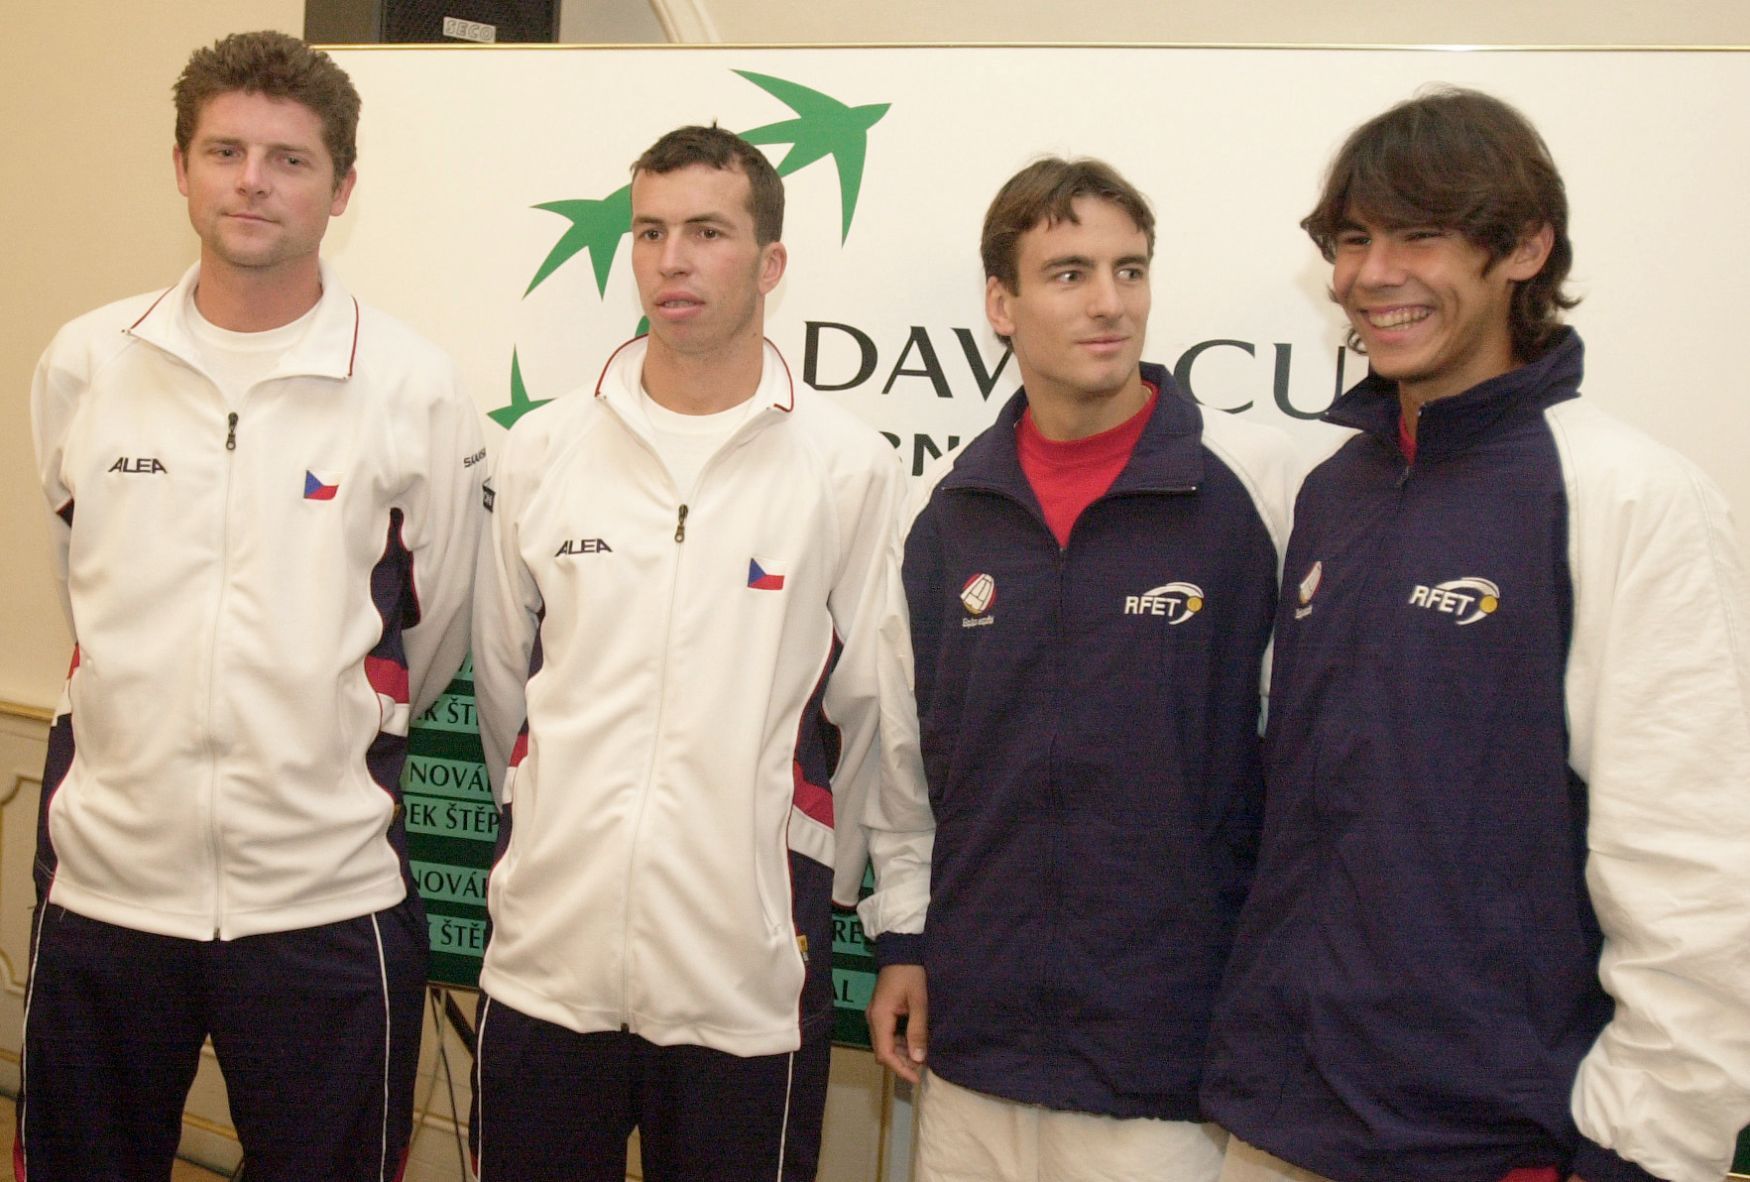 Davis Cup, Česká republika - Španělsko 2004 (Novák, Štěpánek, Robredo, Nadal)